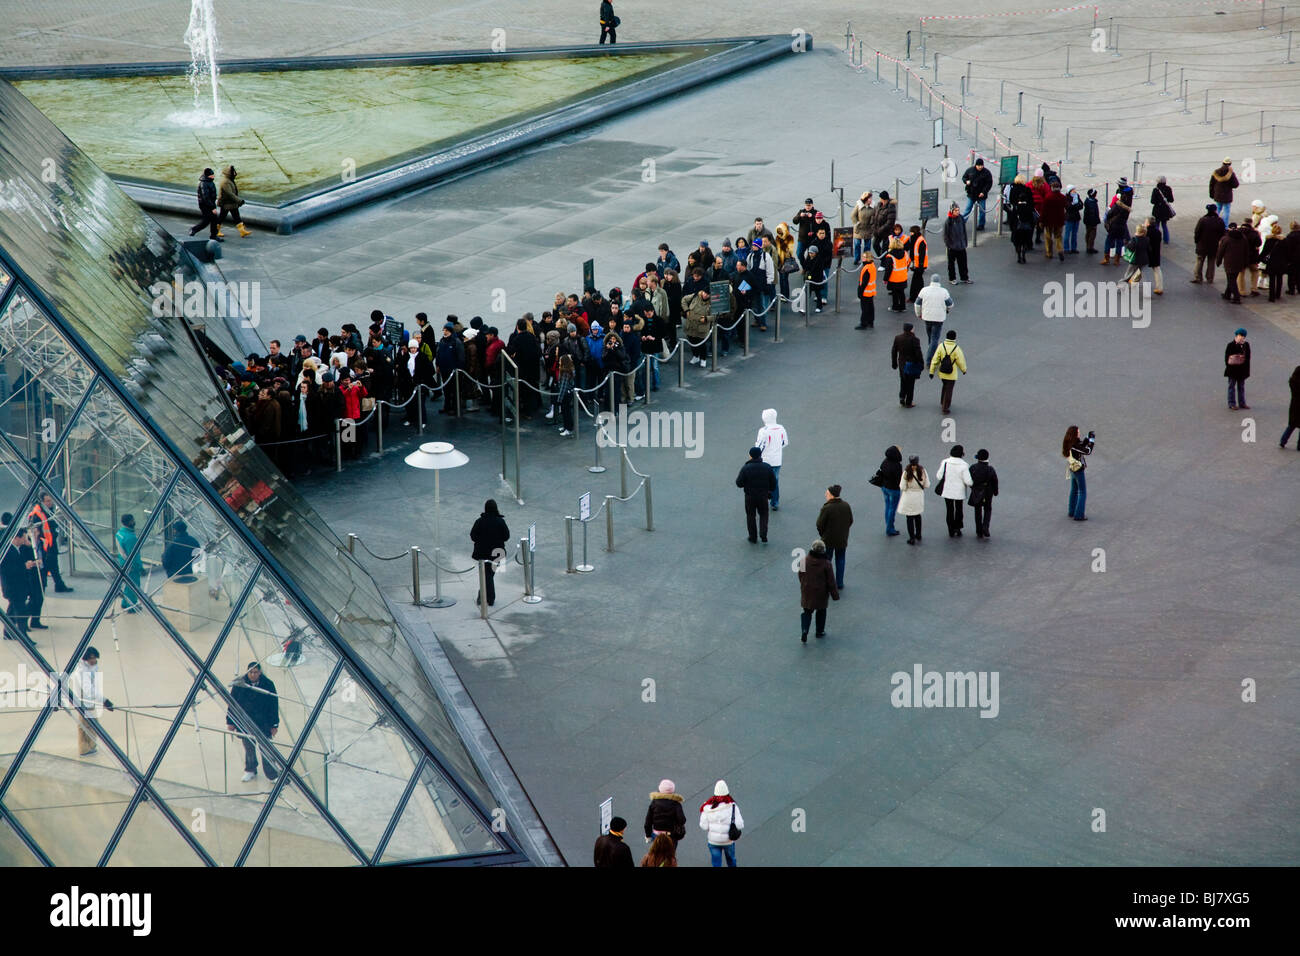 Menschen in die Warteschlange zum kostenlosen Eintritt in das Louvre Museum / Musée / Palais du Louvre, neben der Glaspyramide. Paris, Frankreich. Stockfoto